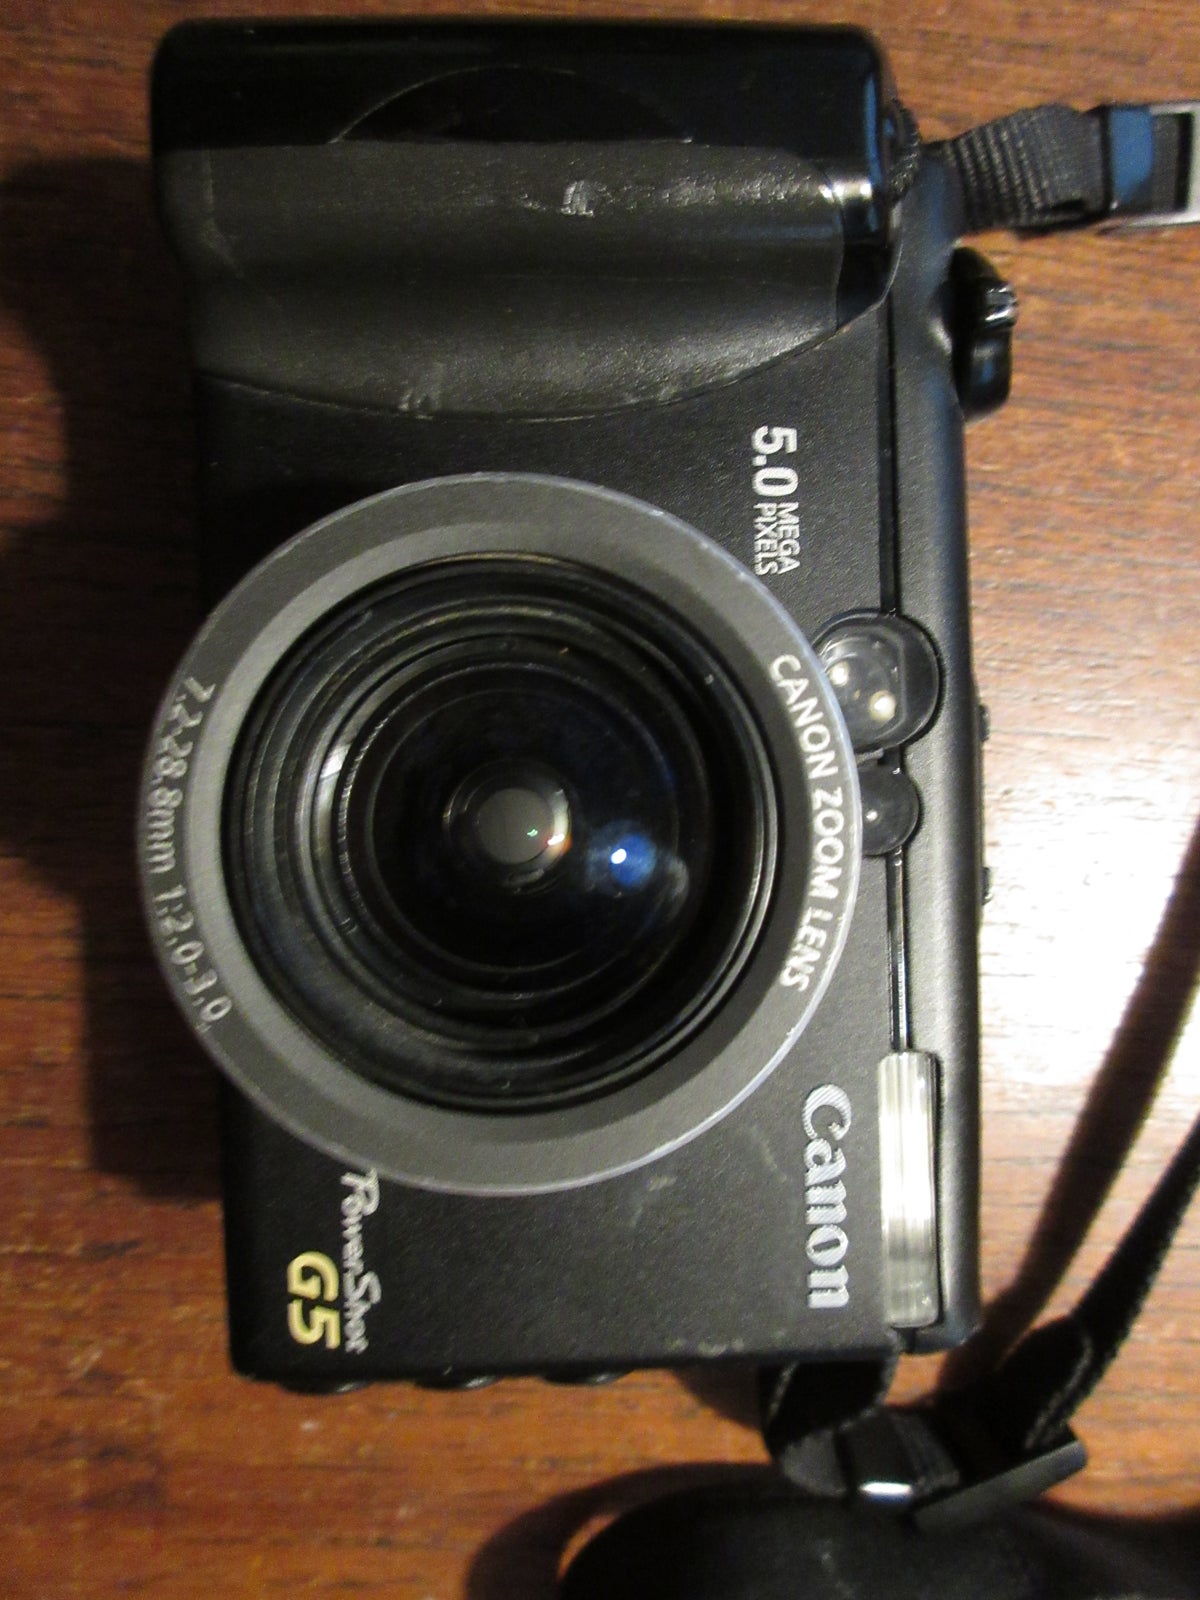 Canon, CANON Digital Power shot G5, 5.0 megapixels